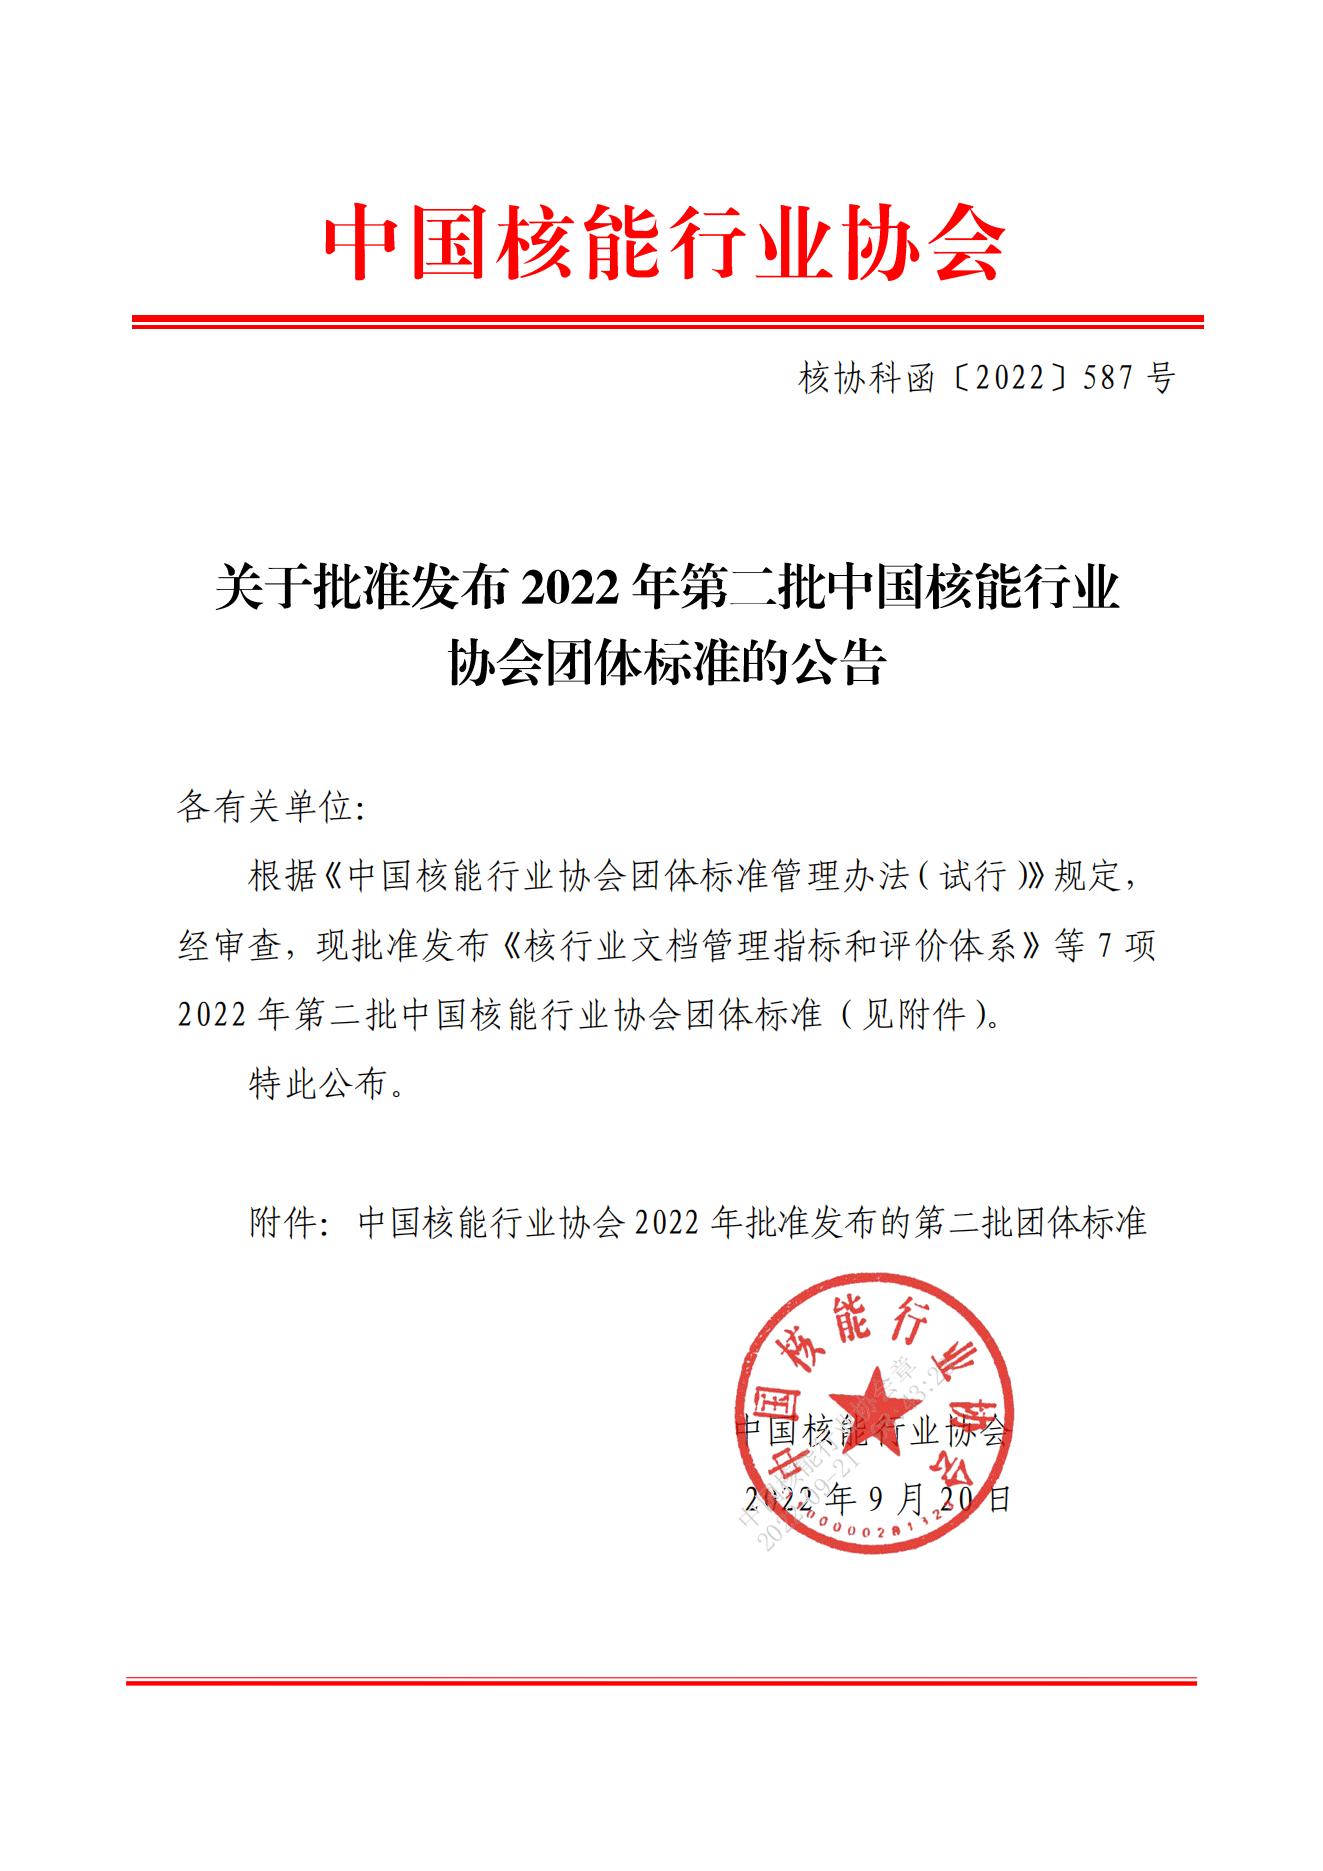 关于批准发布2022年第二批中国核能行业协会团体标准的公告_00.jpg